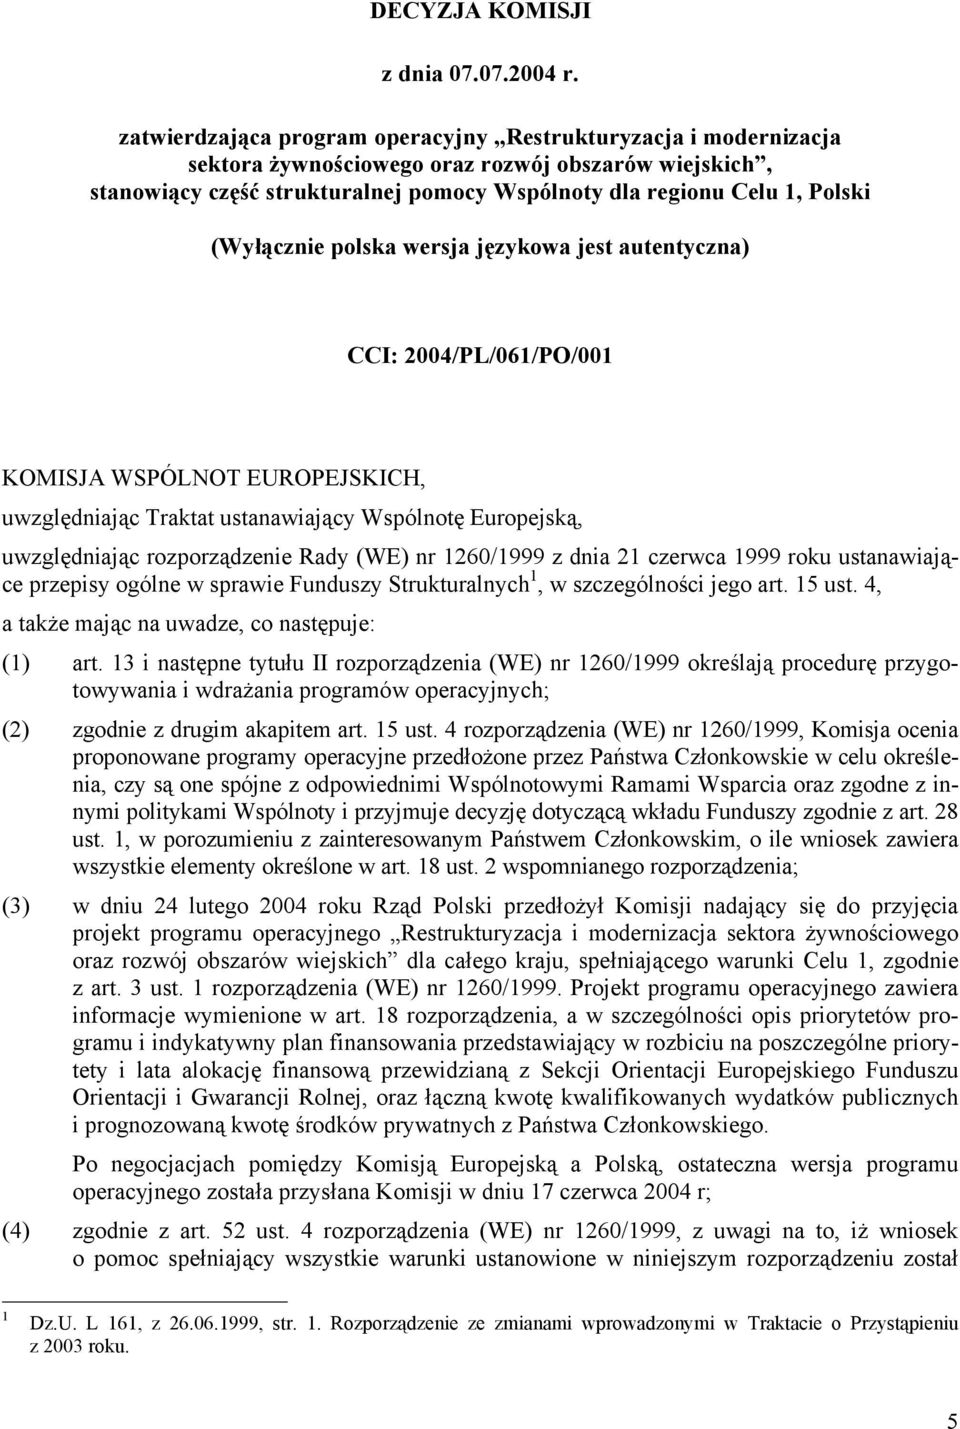 (Wyłącznie polska wersja językowa jest autentyczna) CCI: 2004/PL/061/PO/001 KOMISJA WSPÓLNOT EUROPEJSKICH, uwzględniając Traktat ustanawiający Wspólnotę Europejską, uwzględniając rozporządzenie Rady